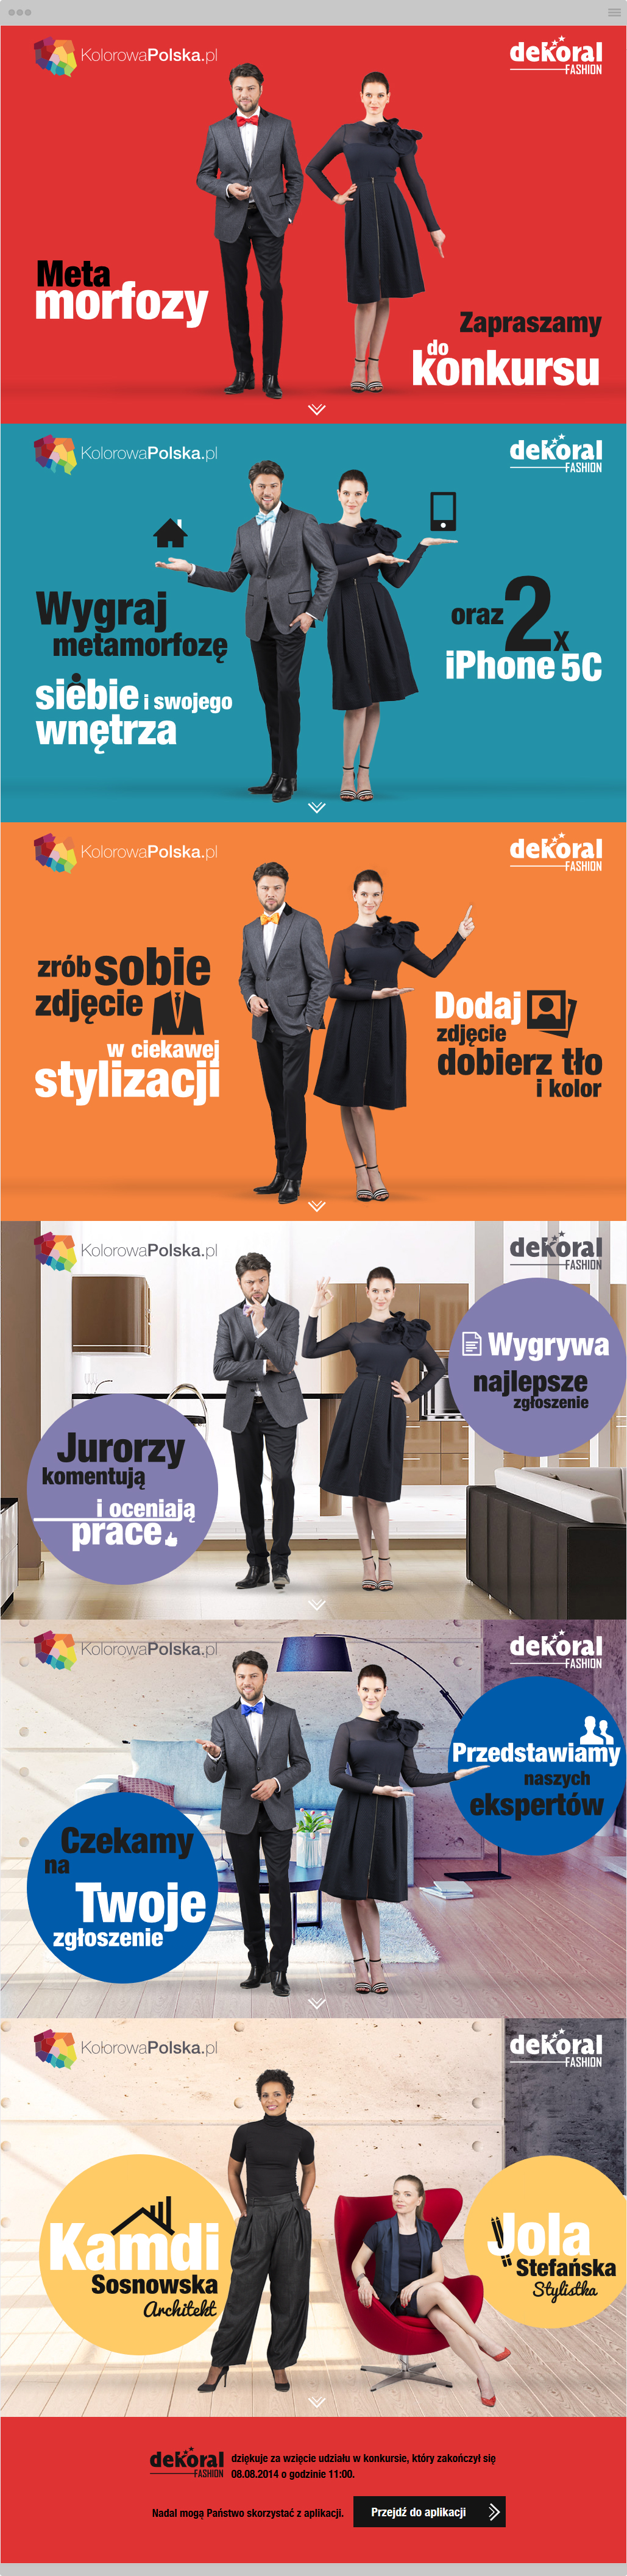 ppg-dekoral-fashion-kampania-kolorowa-polska-okno-metamorfozy